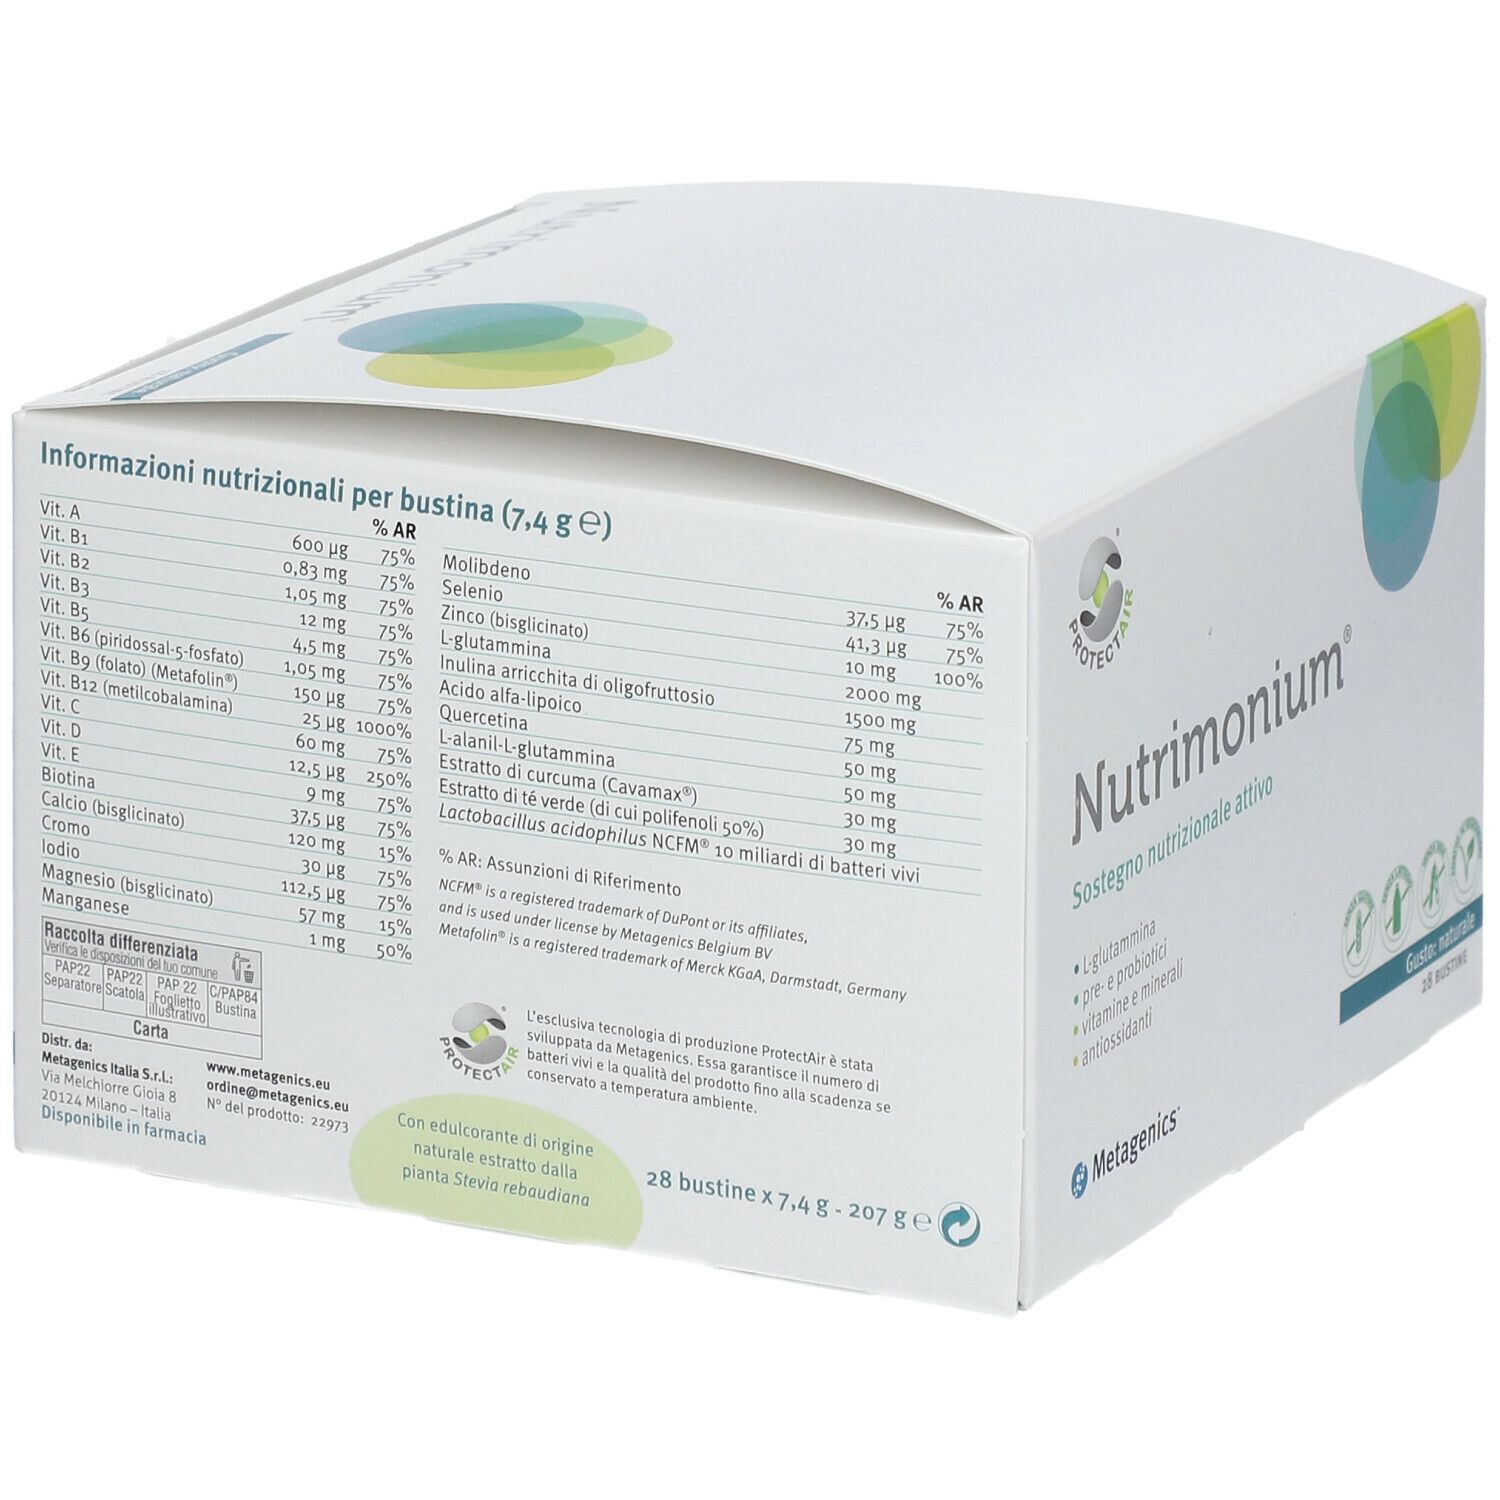 Metagenics™ Nutrimonium